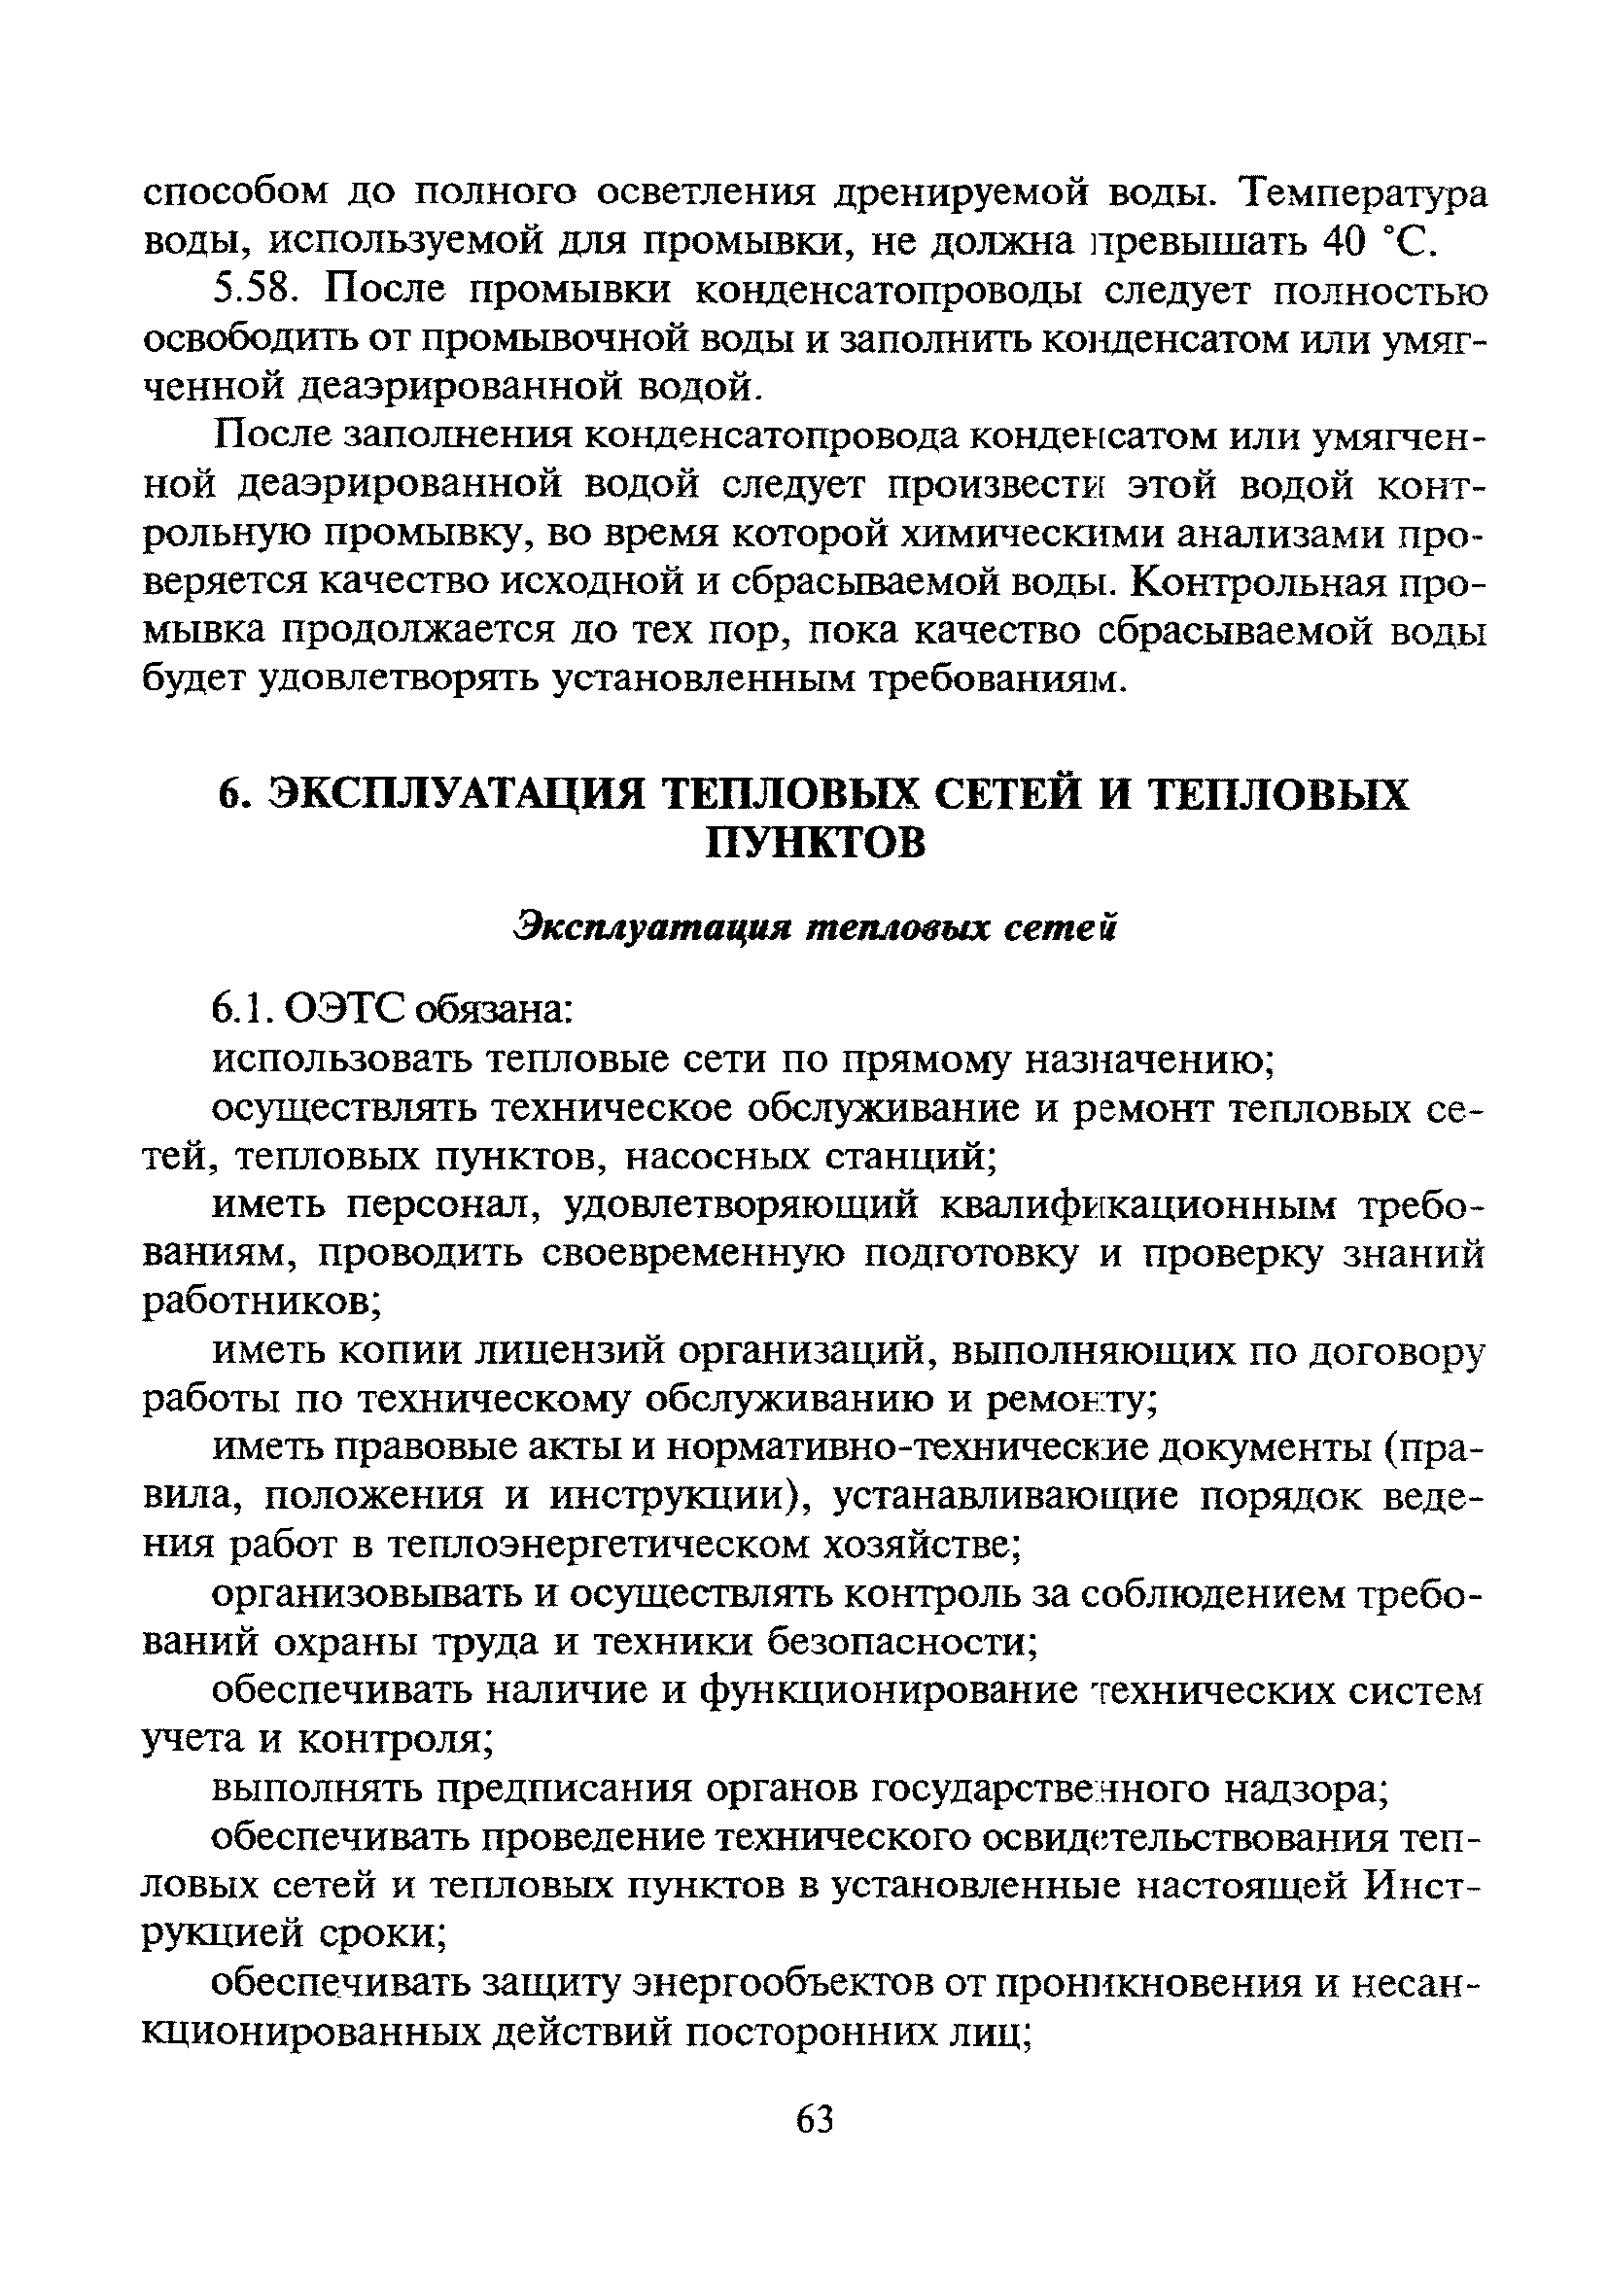 Скачать МДК 4-02.2001 Типовая Инструкция По Технической.